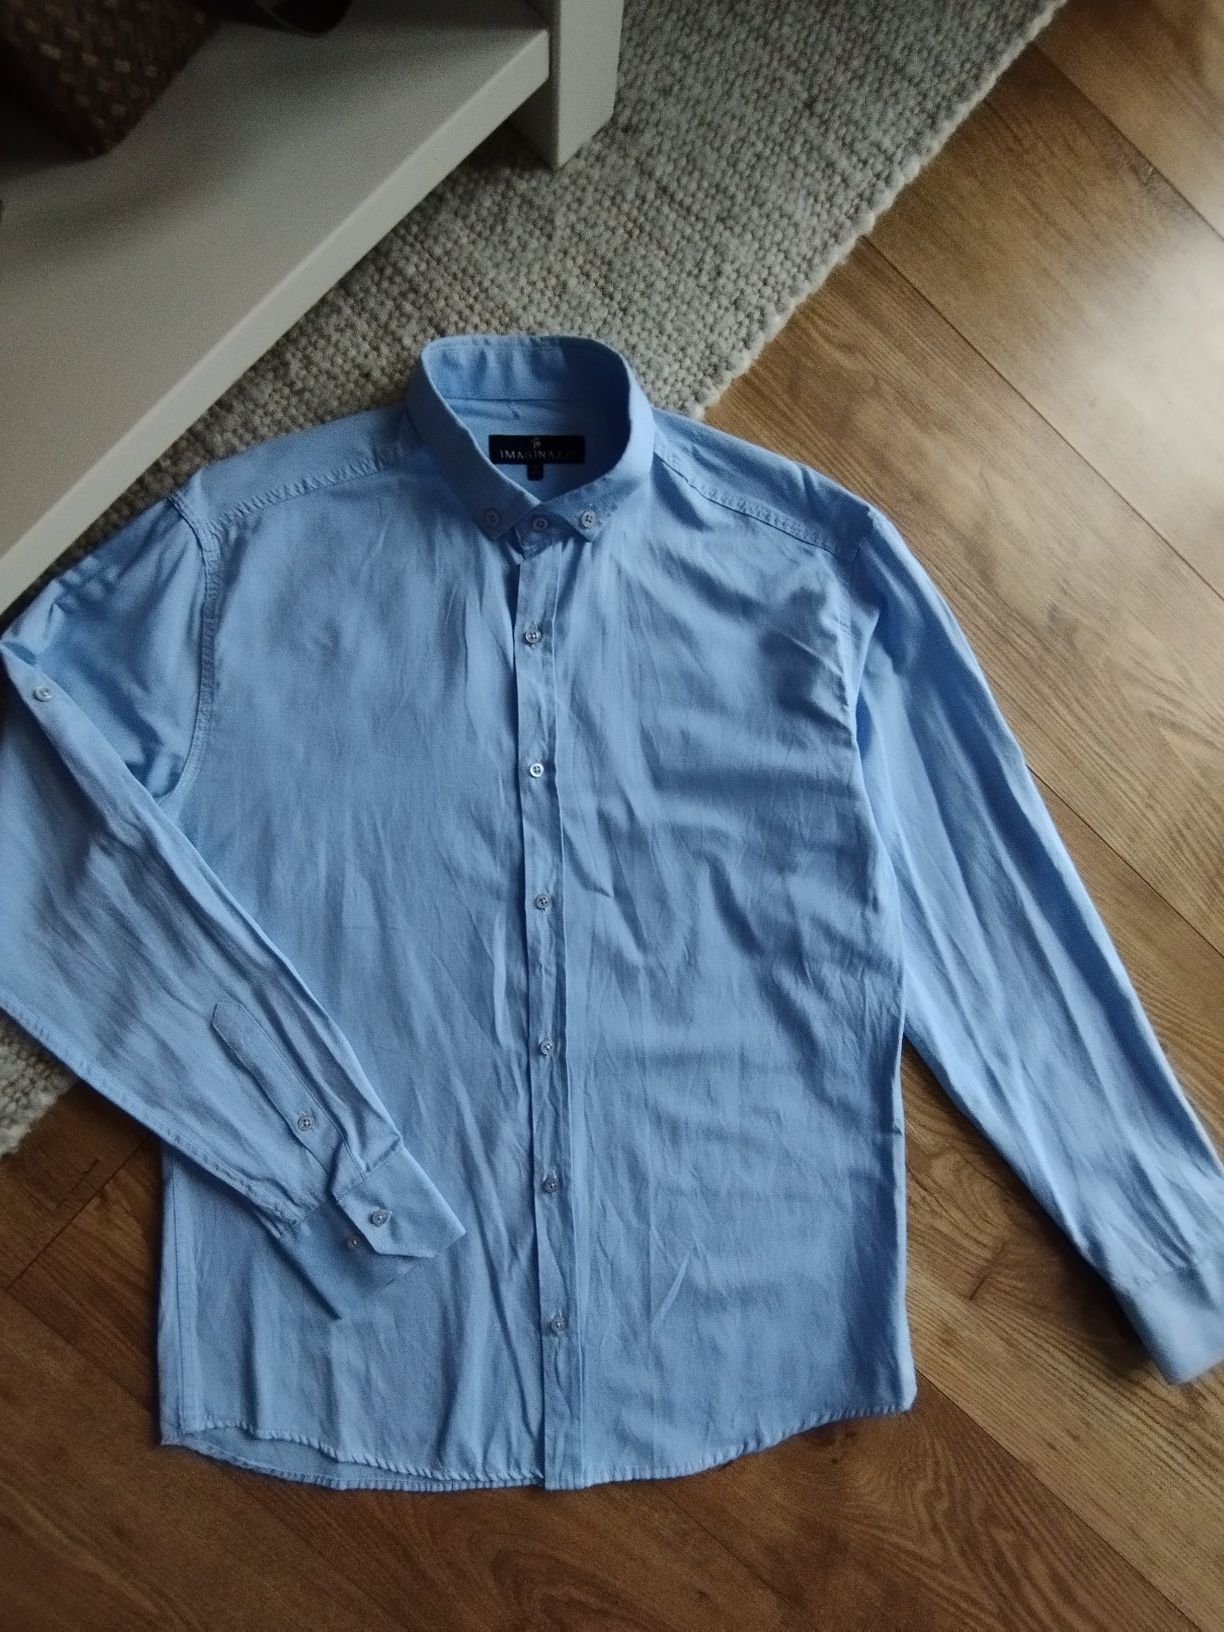 Rozmiar XL, błękitna koszula męska